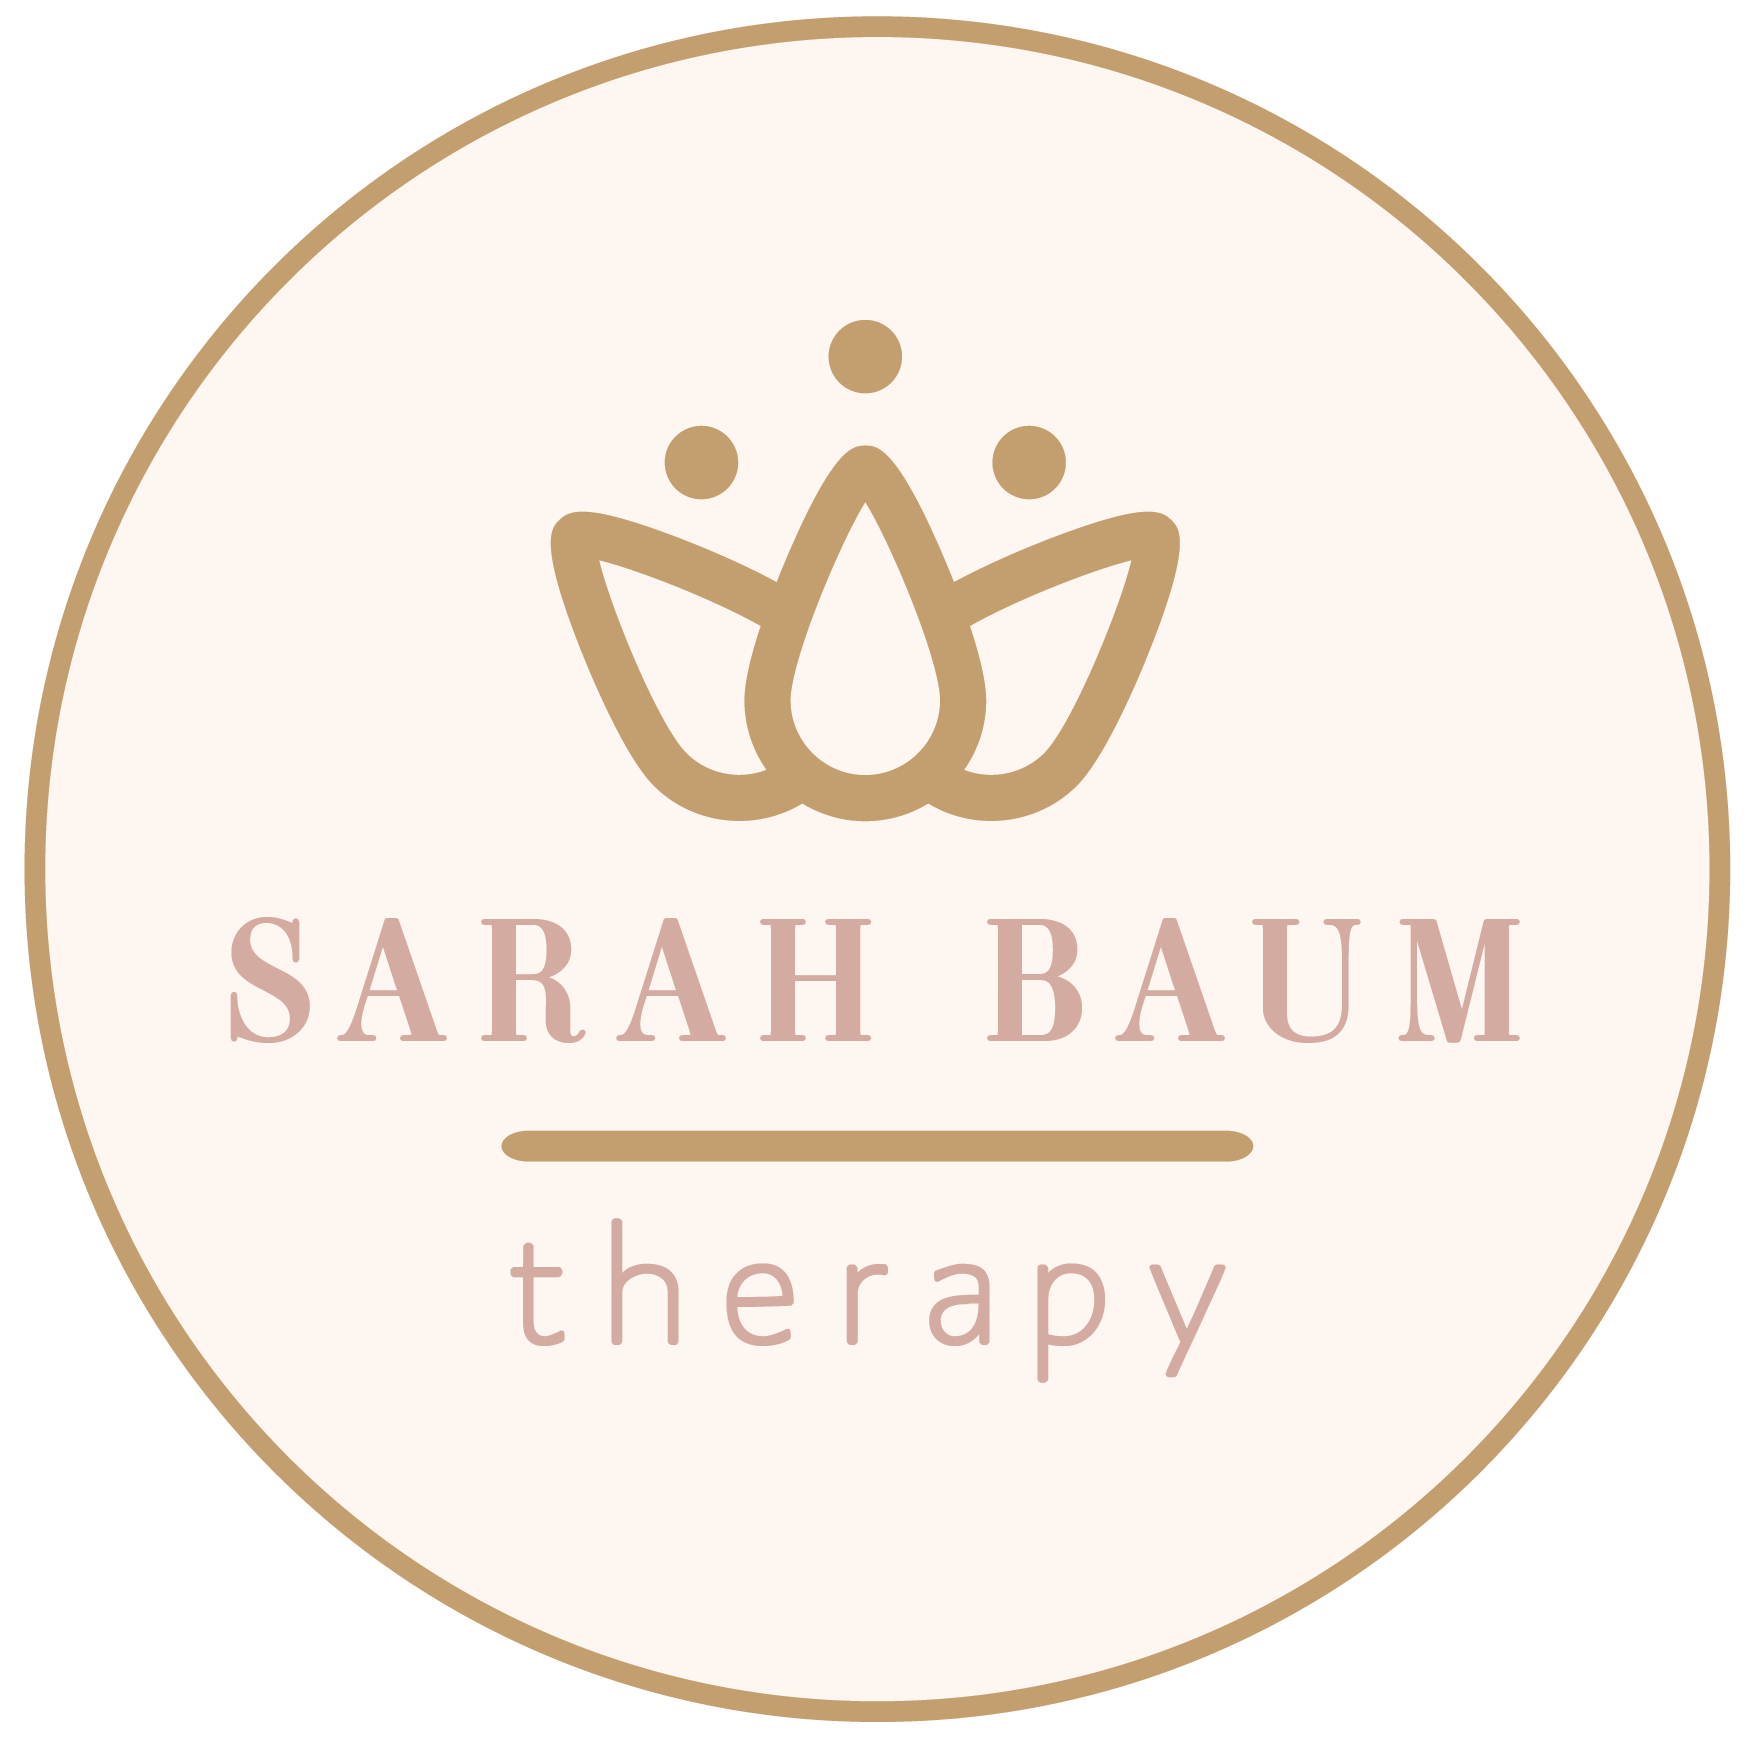 Sarah Baum Therapy